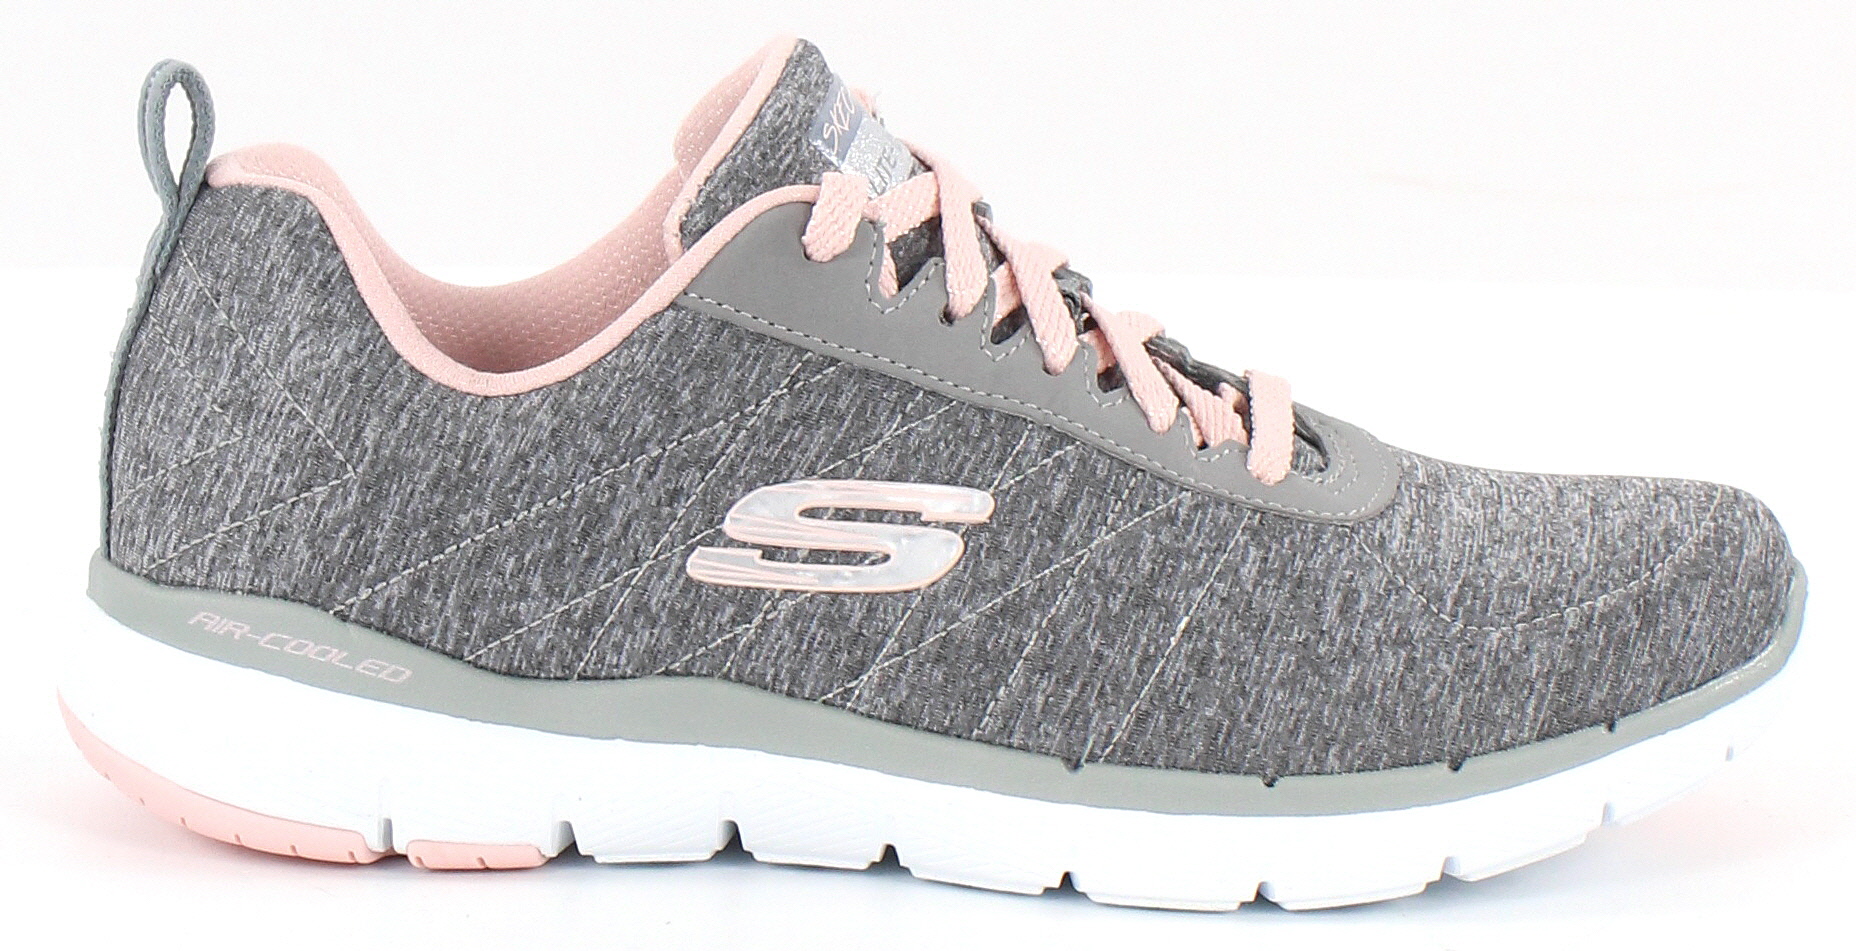 Skechers Sneakers 13067 Flex appeal, Grey - Stilettoshop.eu webstore